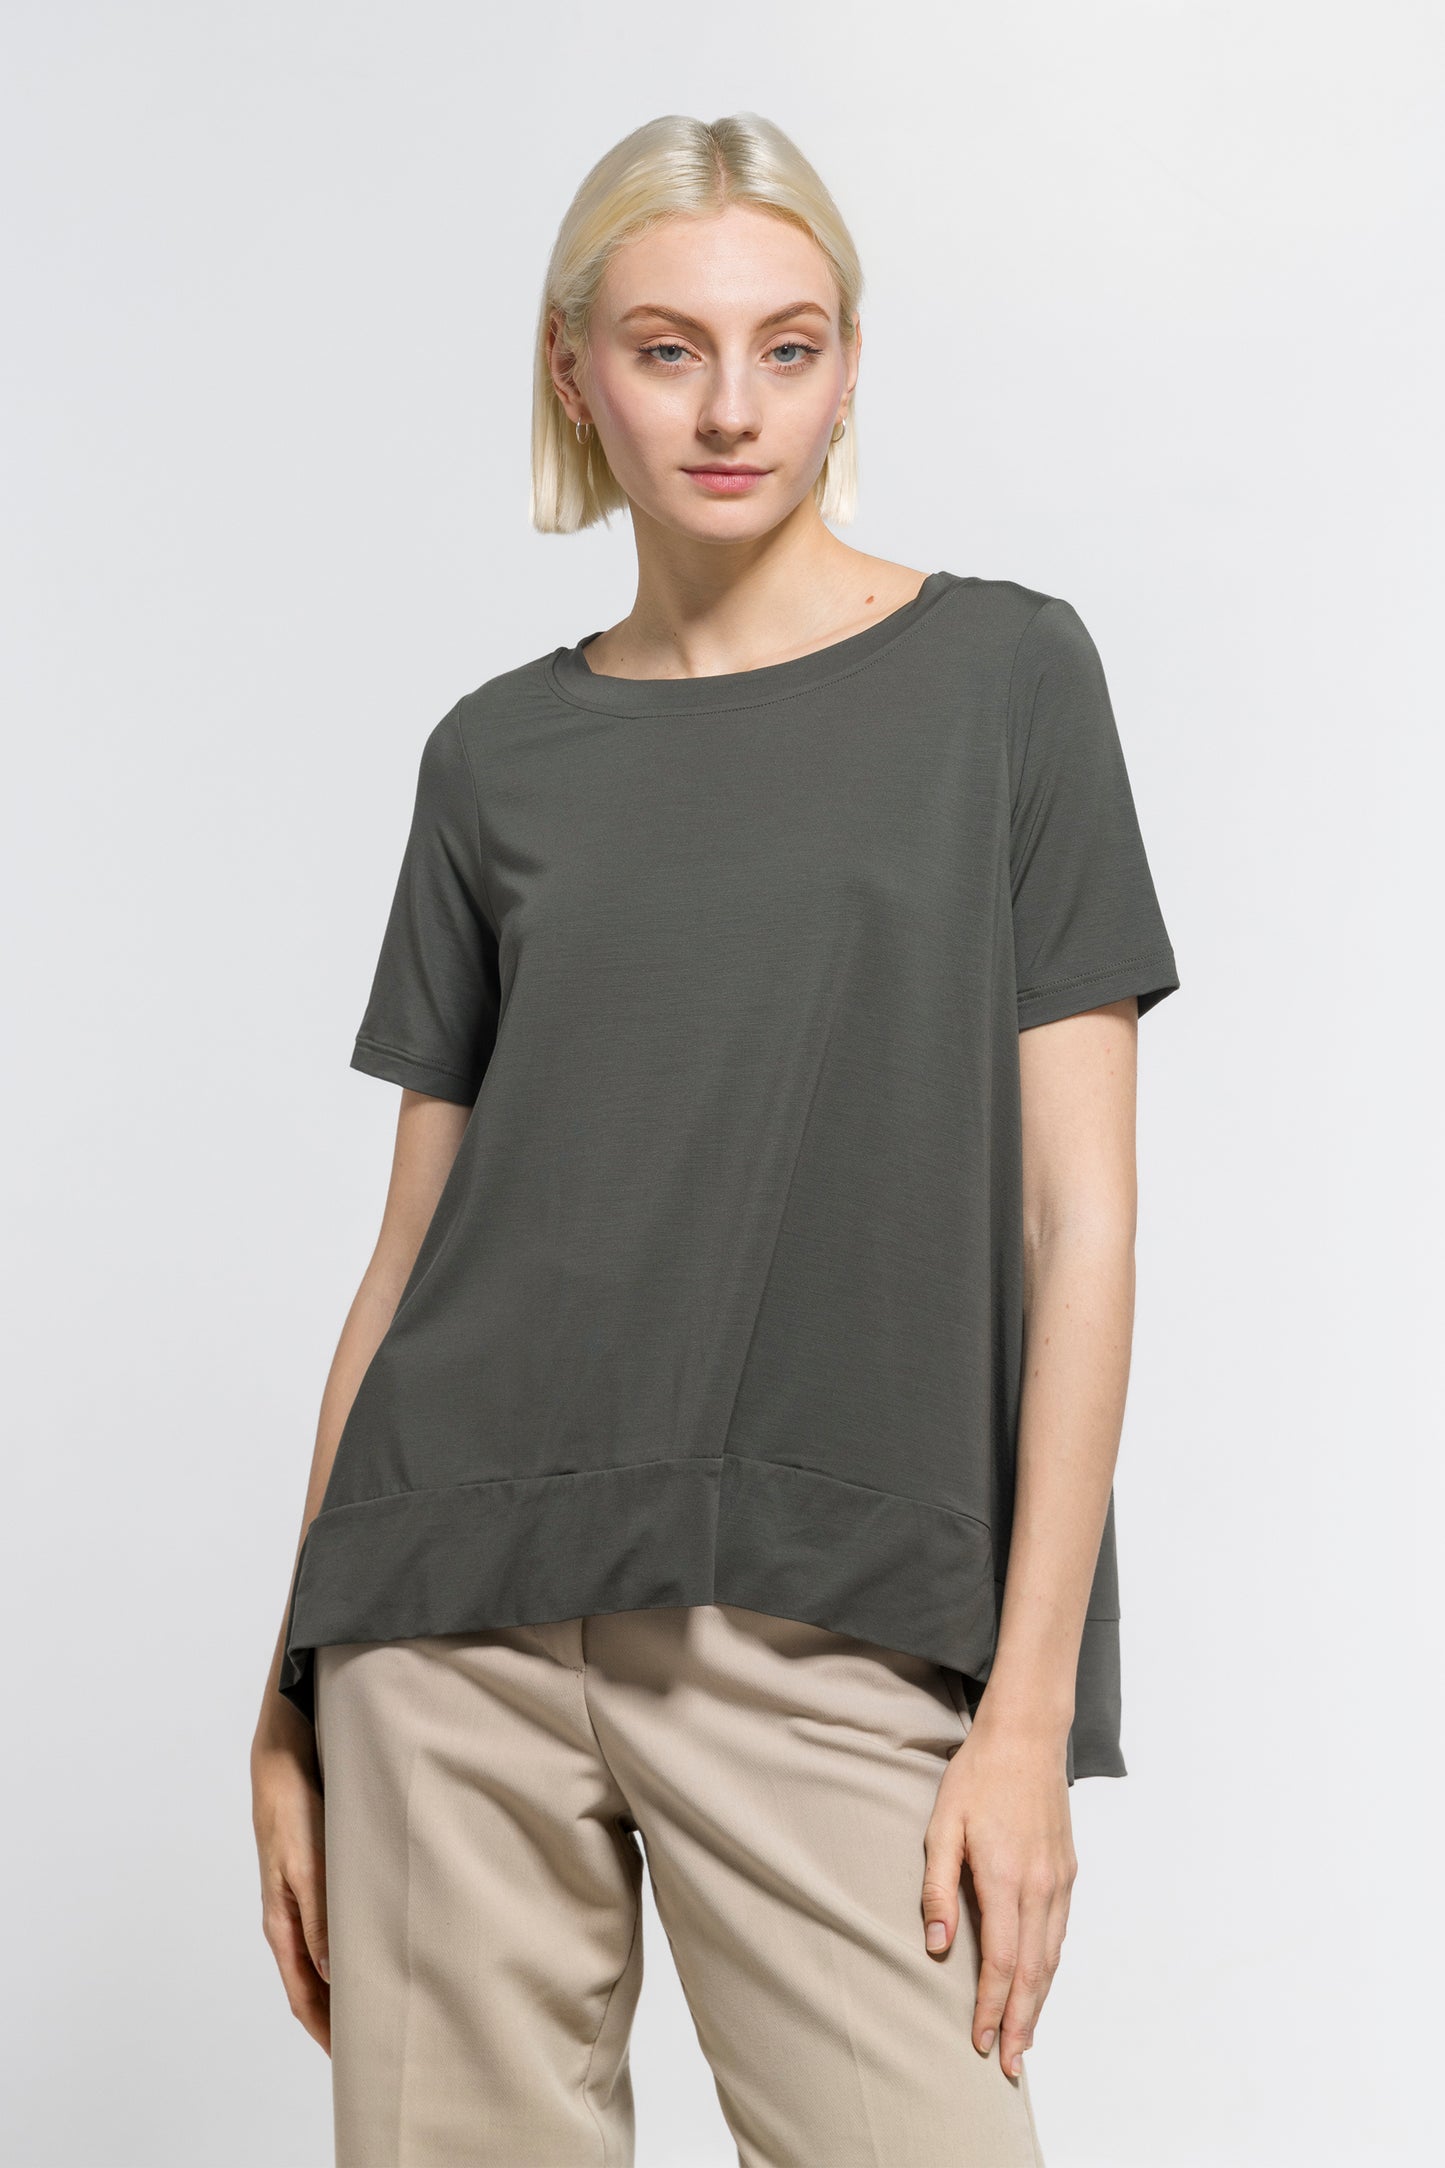 T-shirt Femme Modal 1335